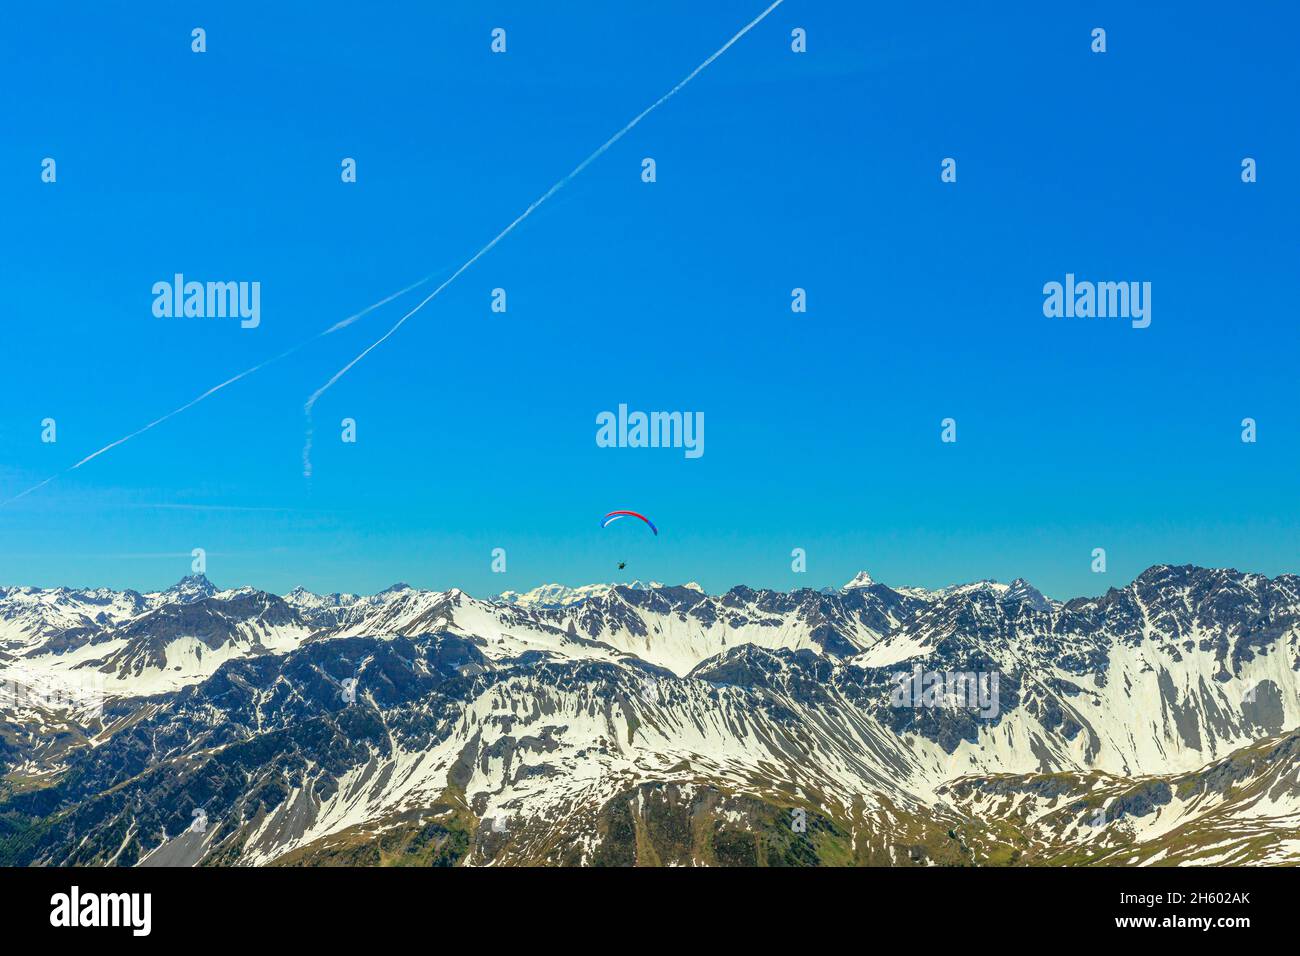 Parapente de montagne dans le ciel bleu du pic Aroser Weisshorn, station touristique en Suisse.Vue de dessus de la station de téléphérique des Alpes Plessur à Banque D'Images